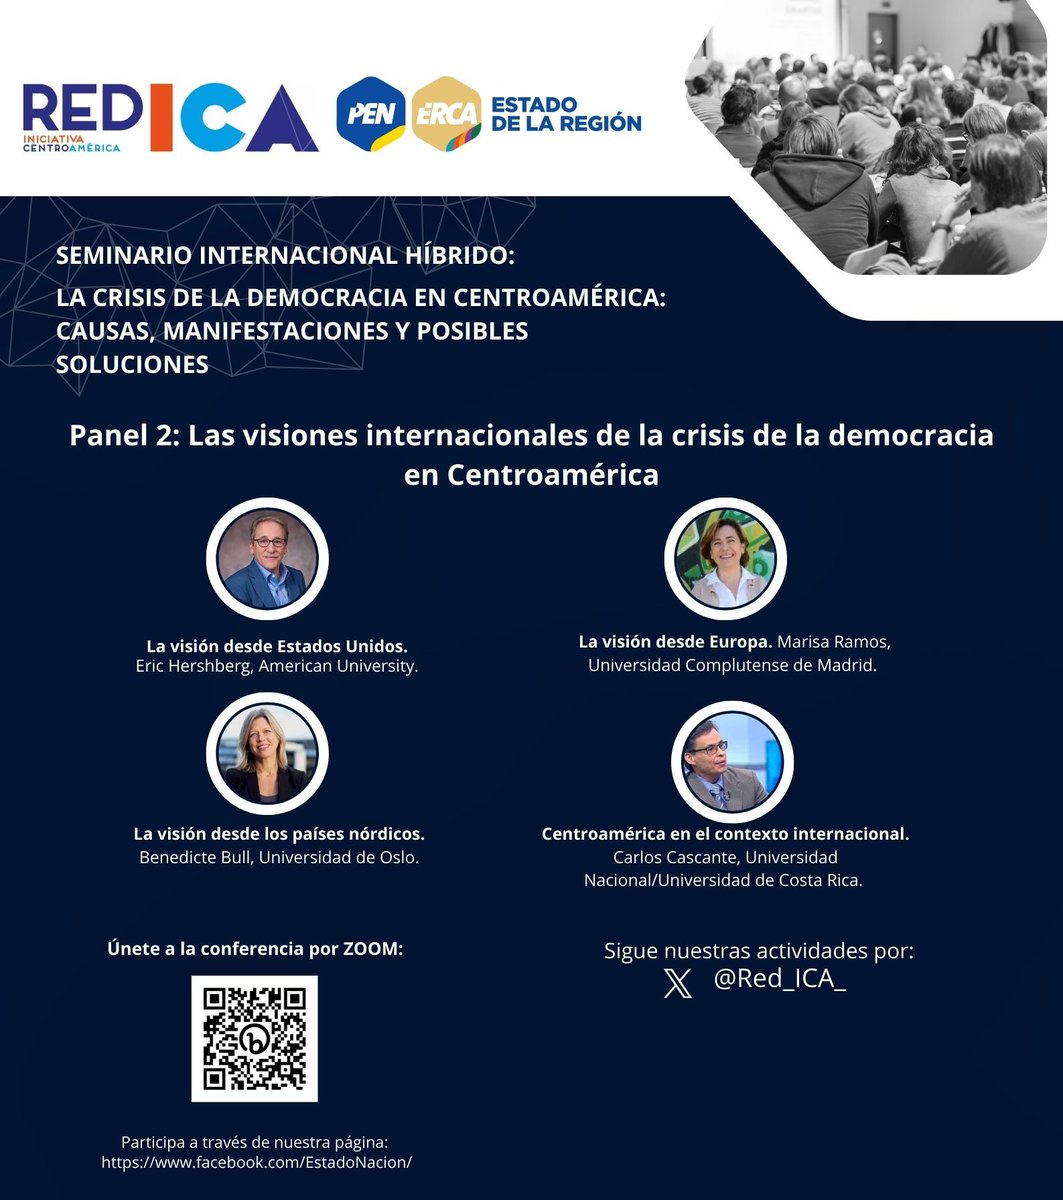 ✅Estamos iniciando el segundo panel #Visiones internacionales de la #crisis de la #democracia en #centroamerica. Gracias por acompañarnos. Estamos conectados por ZOOM ⬇️y FB de @EstadoNacion. Modera el panel @ASegoviaSV